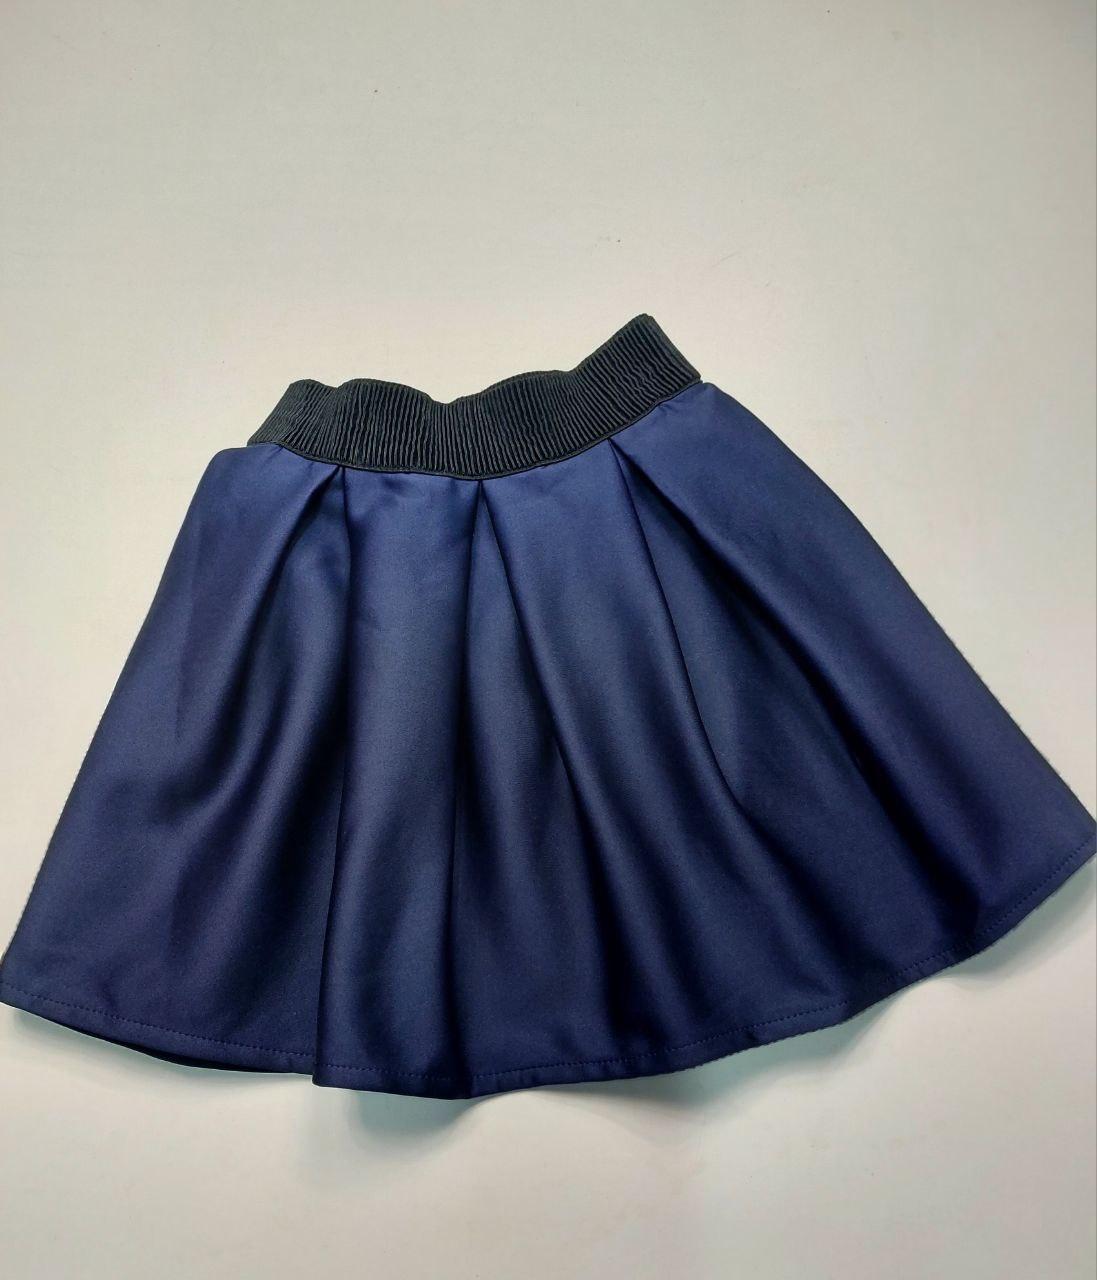 Шкільна спідничка на дівчинку, на зріст 128, 134 см, тканина неопрен, темно синій